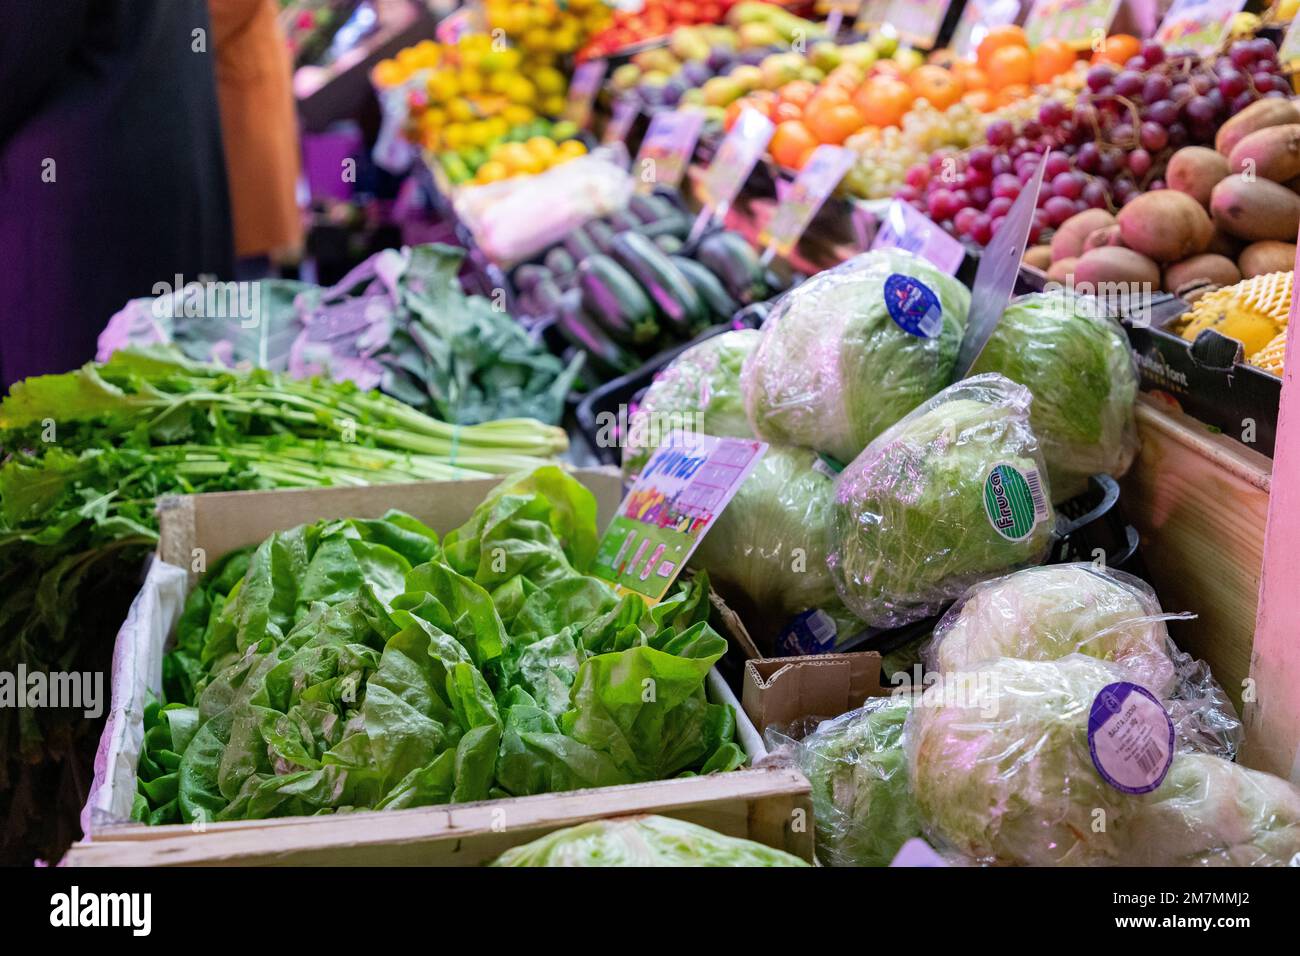 Lettres. Une cale de fruits et légumes. Décrochage de laitue dans un marché de Madrid, Espagne. Feuilles de laitue verte avec gouttes d'eau. Photographie horizontale. Banque D'Images